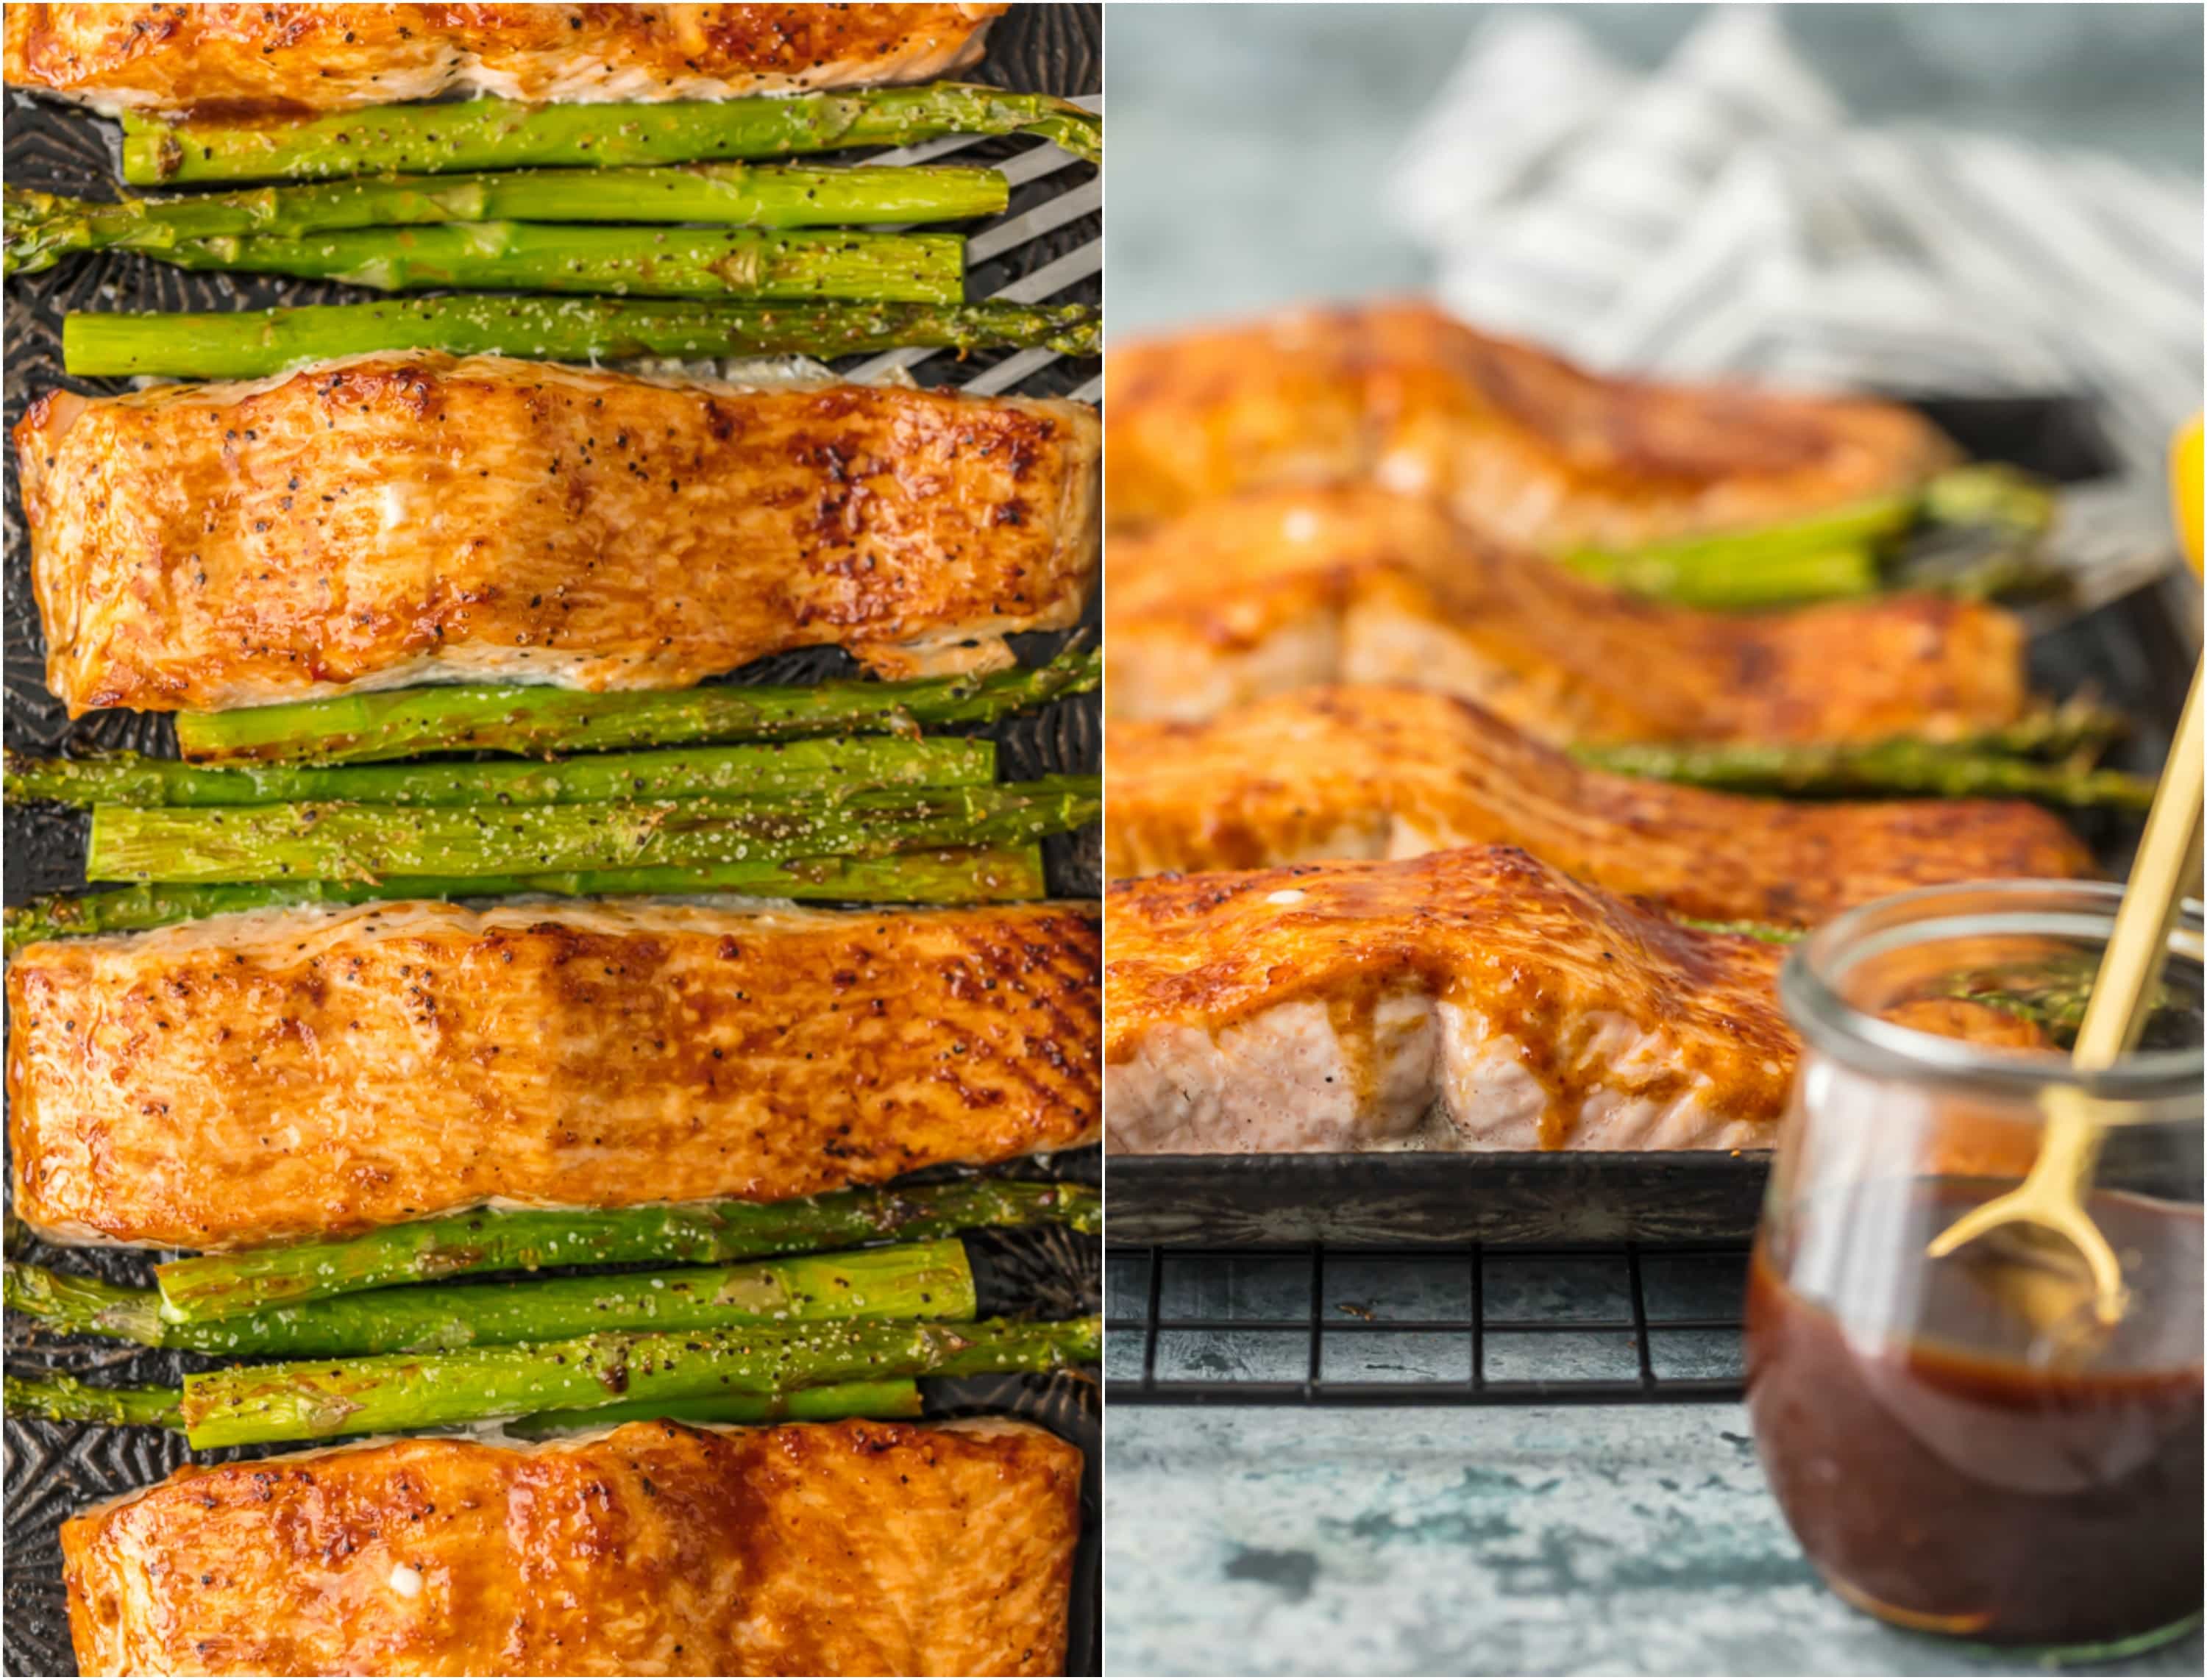 hoisin salmon and asparagus baked on sheet pan